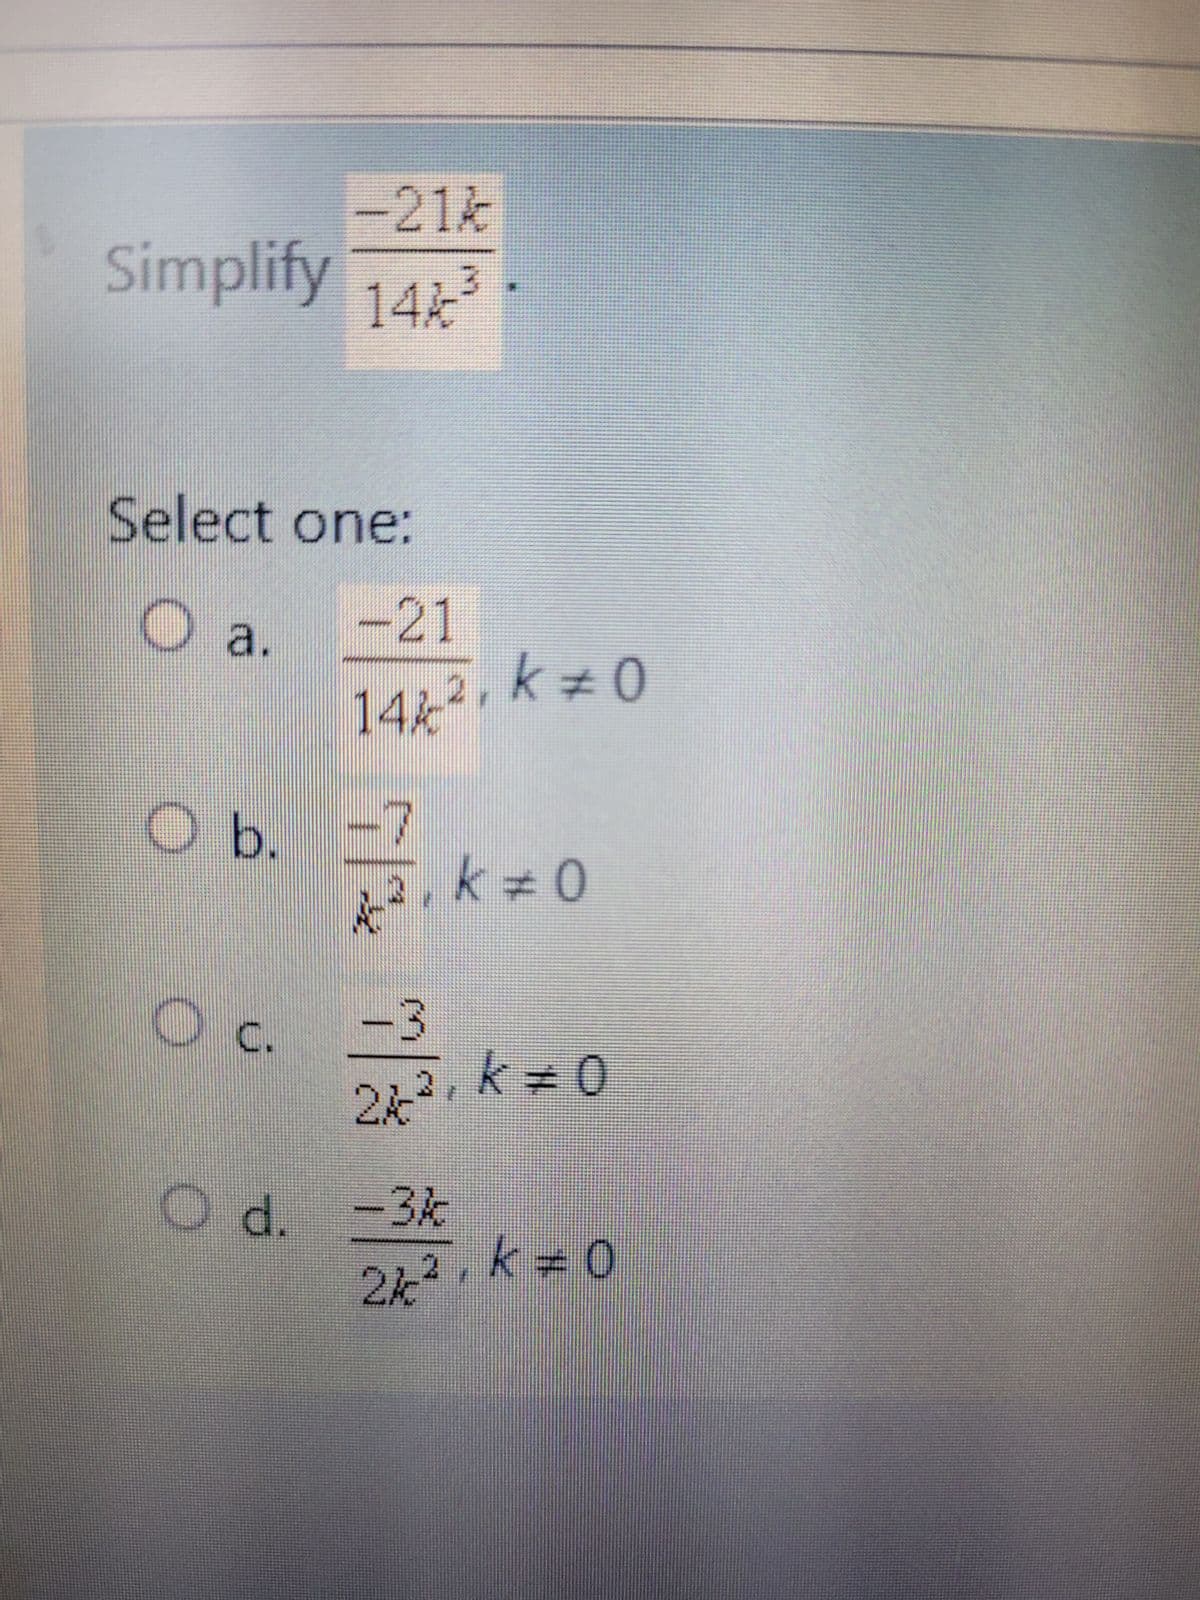 -21%
Simplify 144³
Select one:
O a.
-21
14/ ², k = 0
Ob. -7
k #0
O c. -3
24 ²₁ k = 0
3 ,
O d. -3k
2k², k = 0
44